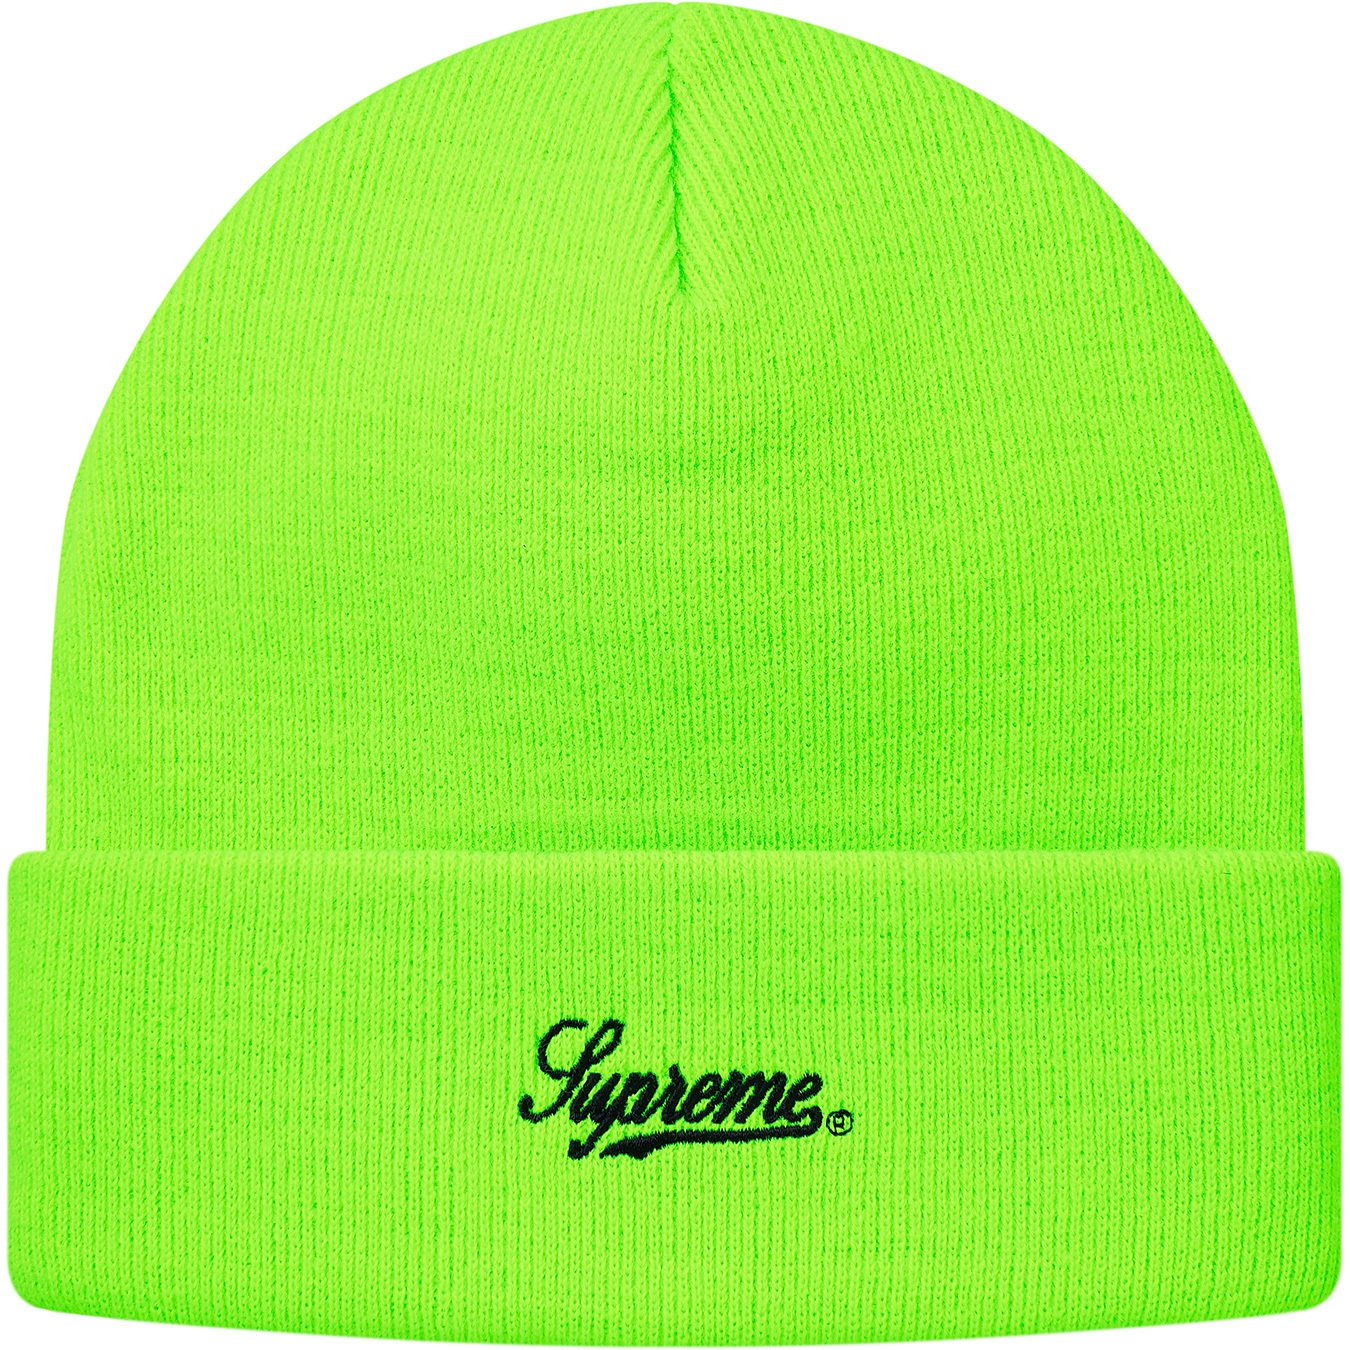 【海外規格】Supreme Obama Beanie Fluorescent Green ニット帽/ビーニー